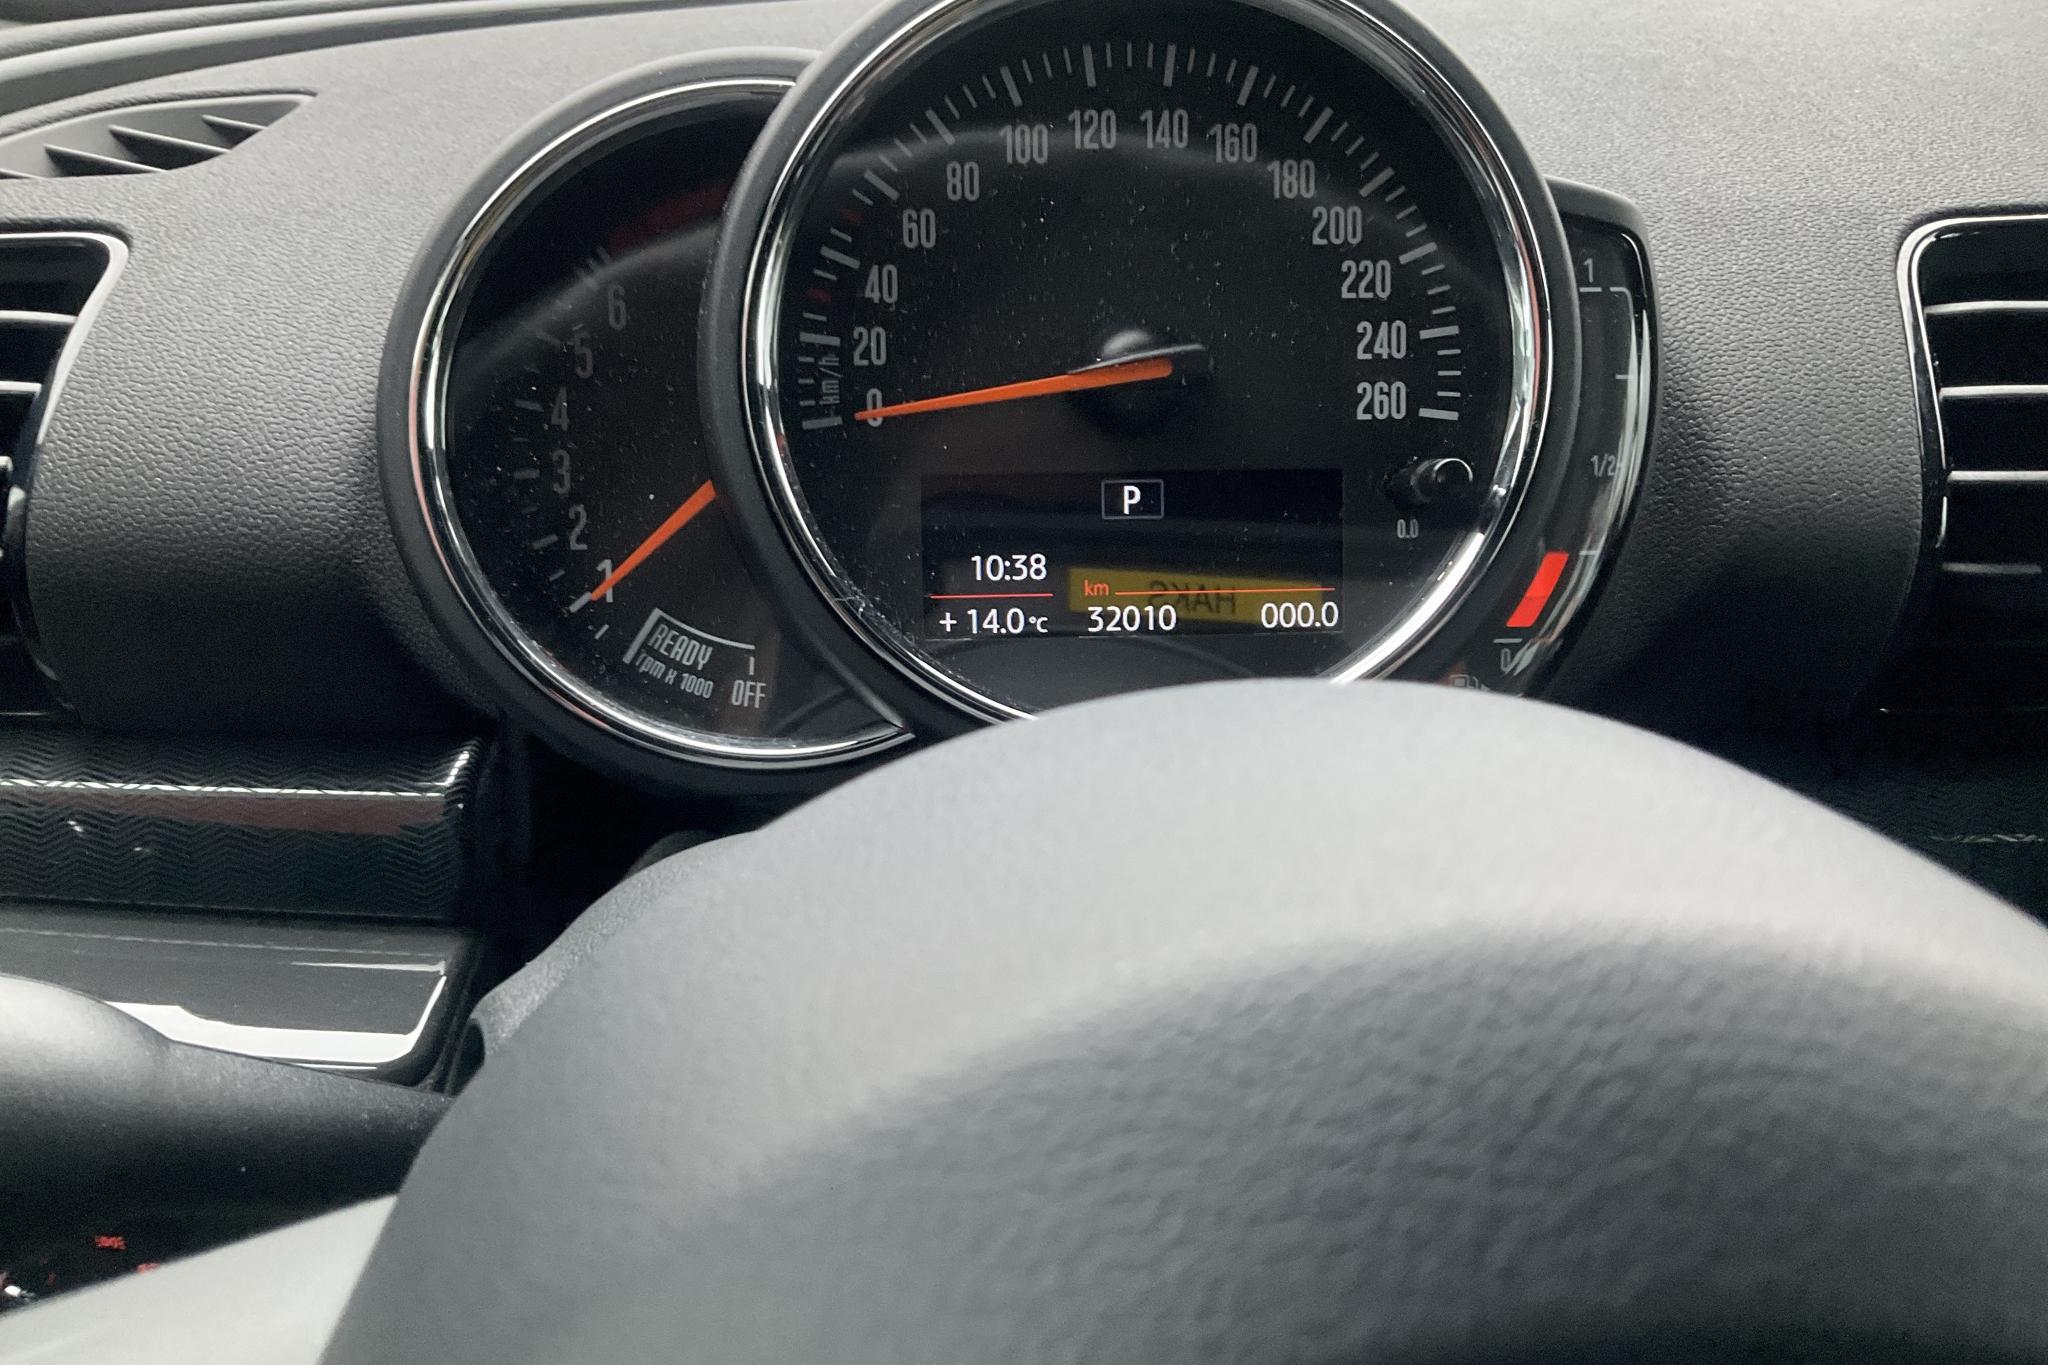 MINI Cooper Clubman, F54 (136hk) - 32 010 km - Automatic - gray - 2019